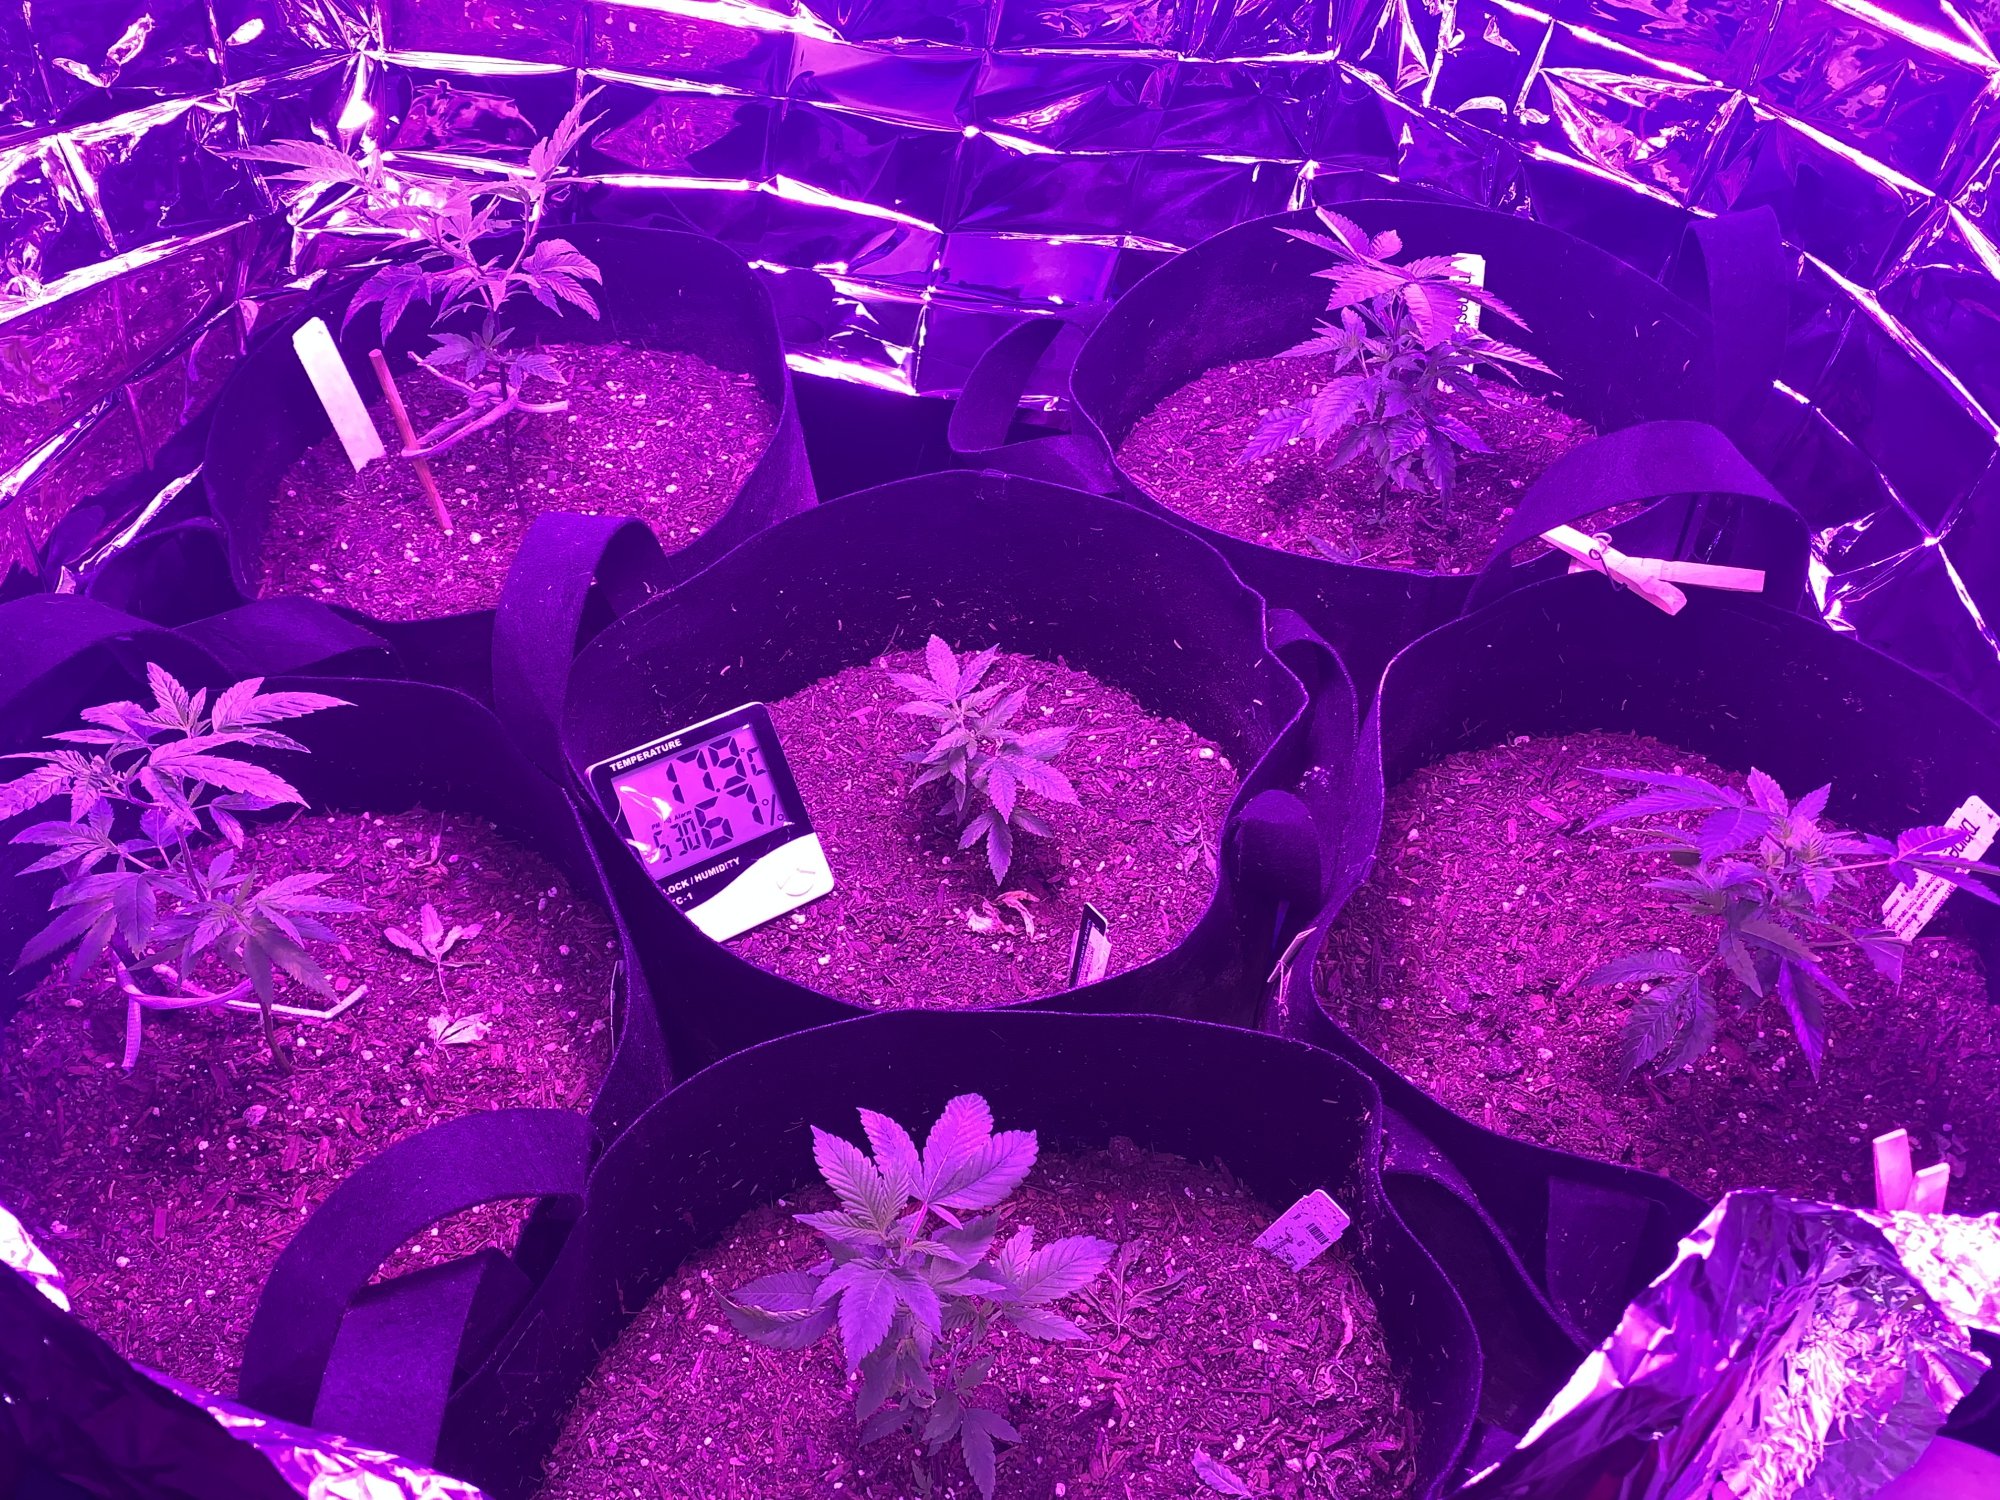 First indoor grow  looking good so far 6